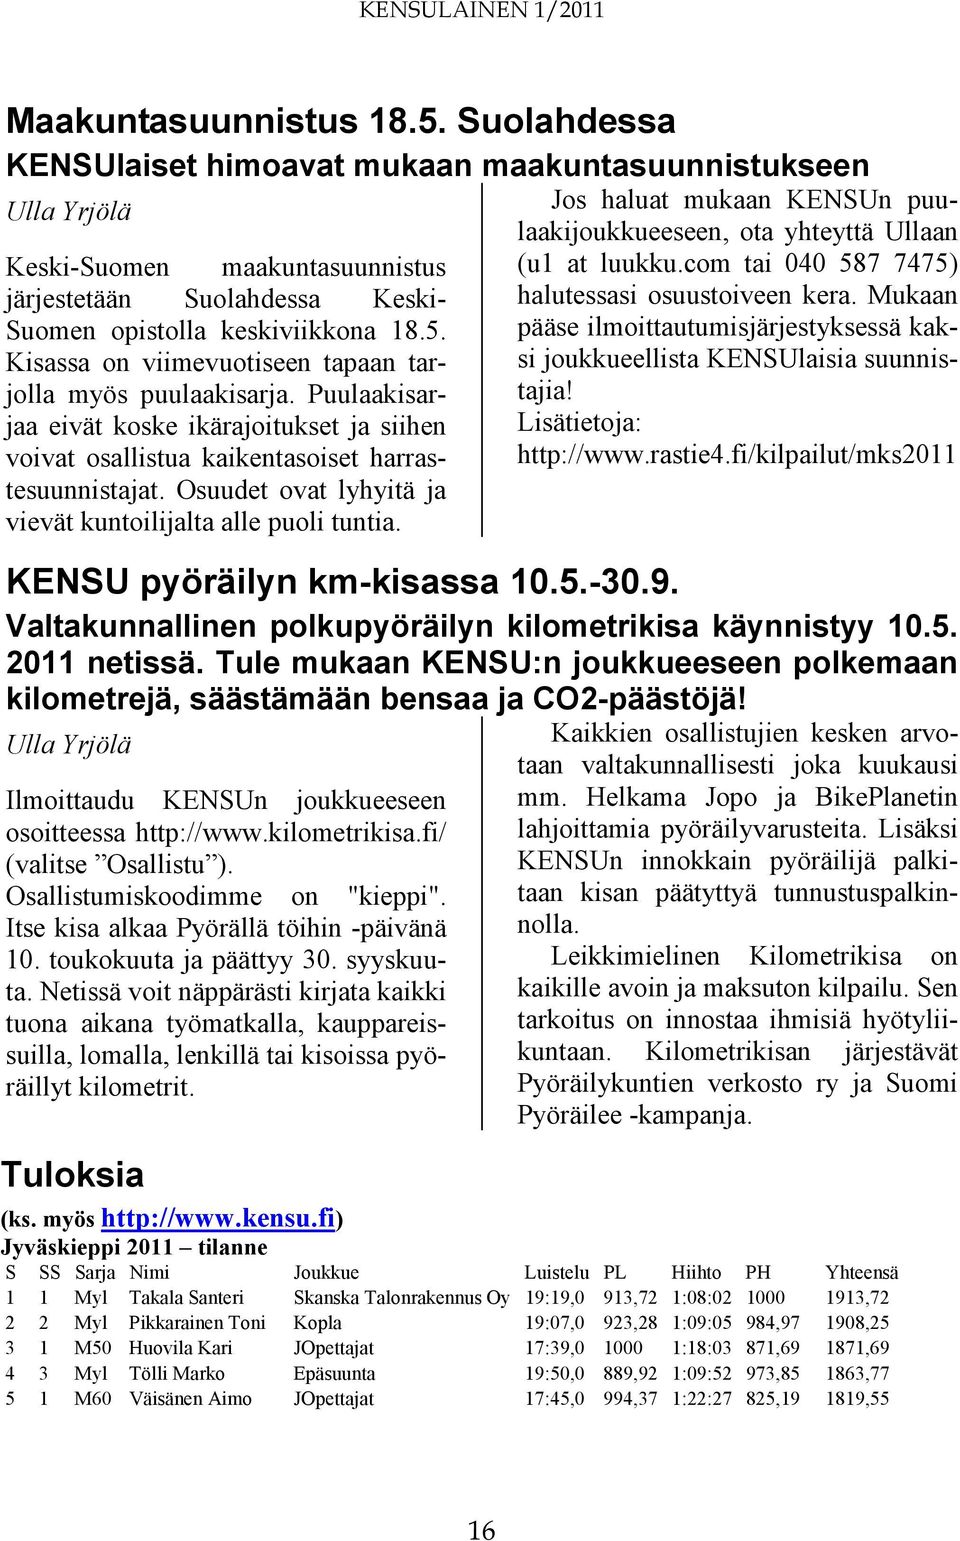 Jos haluat mukaan KENSUn puulaakijoukkueeseen, ota yhteyttä Ullaan (u1 at luukku.com tai 040 587 7475) halutessasi osuustoiveen kera.